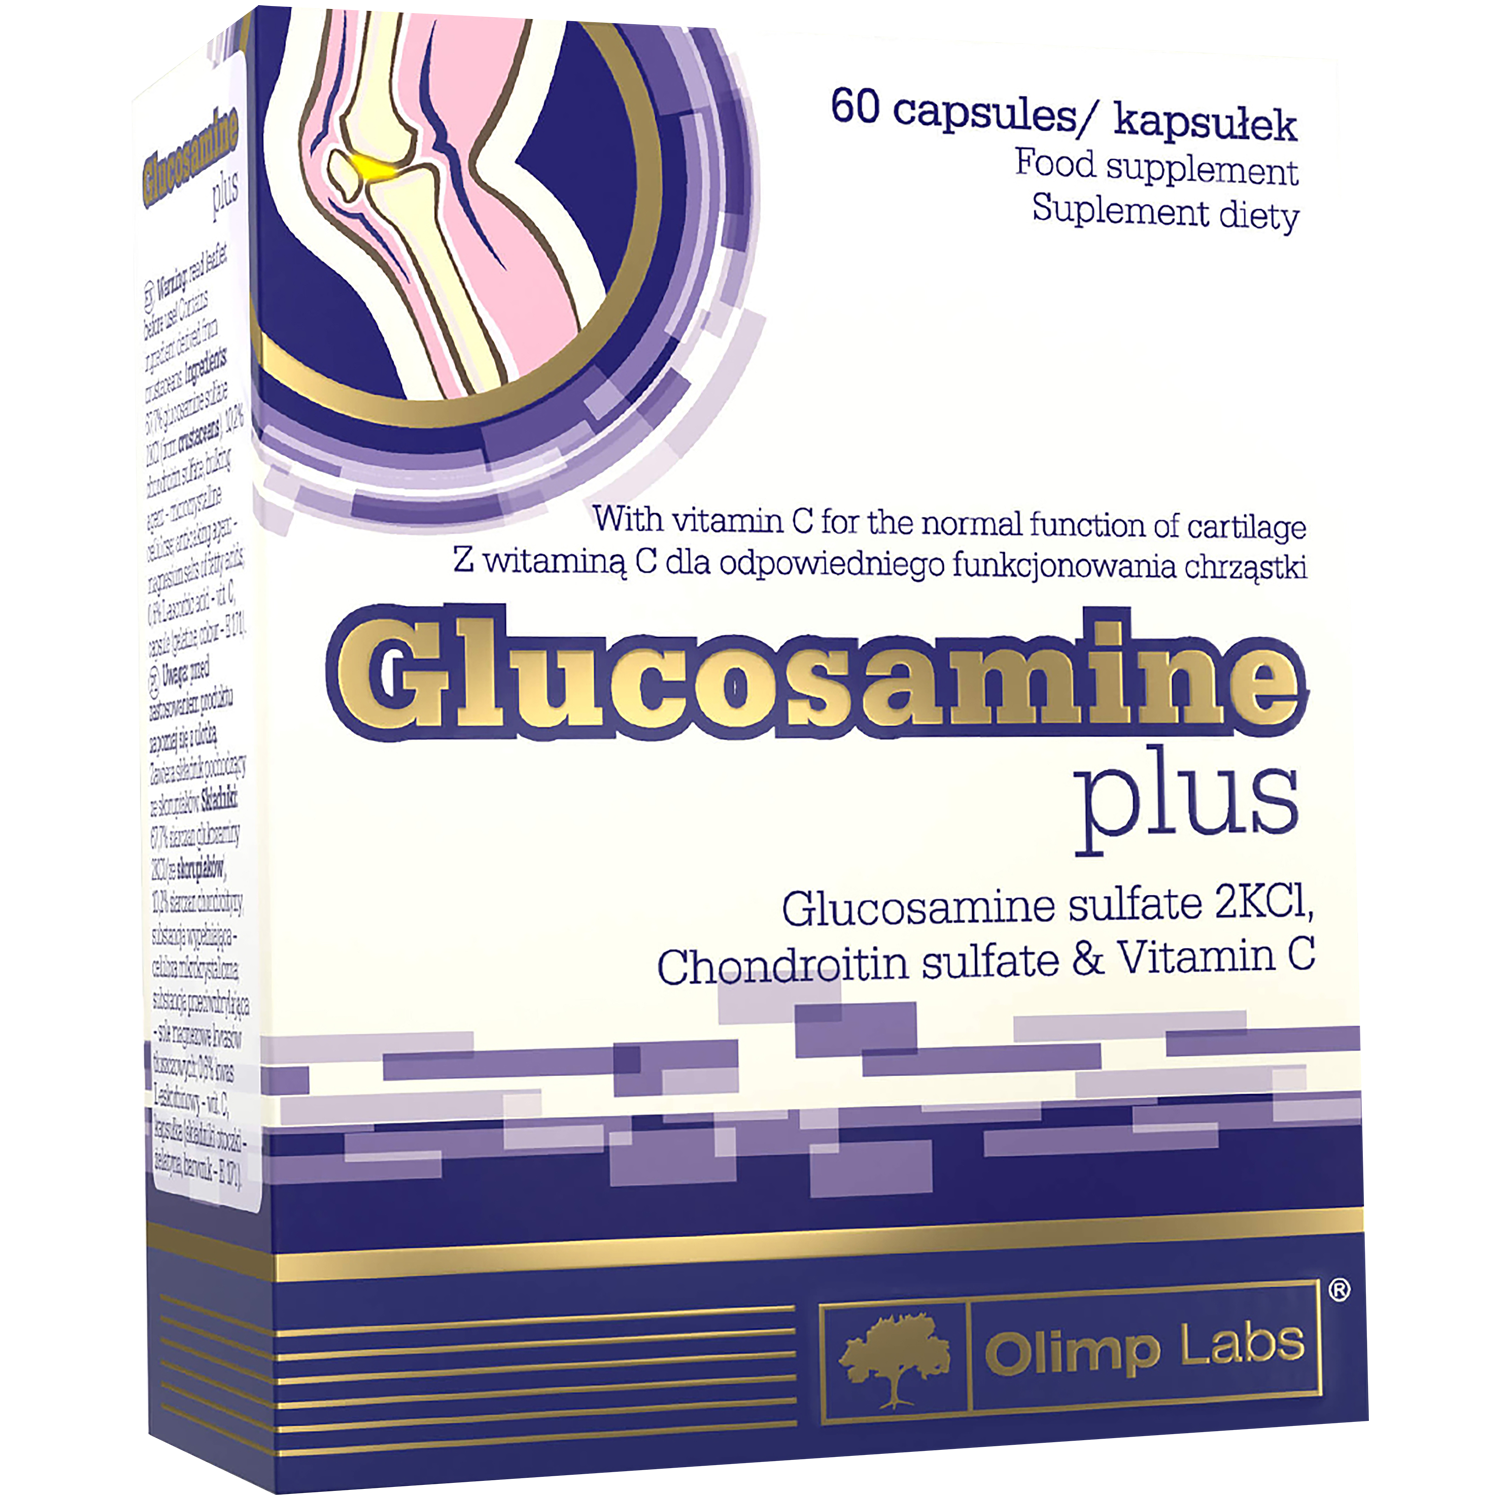 Olimp Glucosamine Plus биологически активная добавка, 60 капсул/1 упаковка биологически активная добавка tetralab индол premium plus с пиперином 60 мл